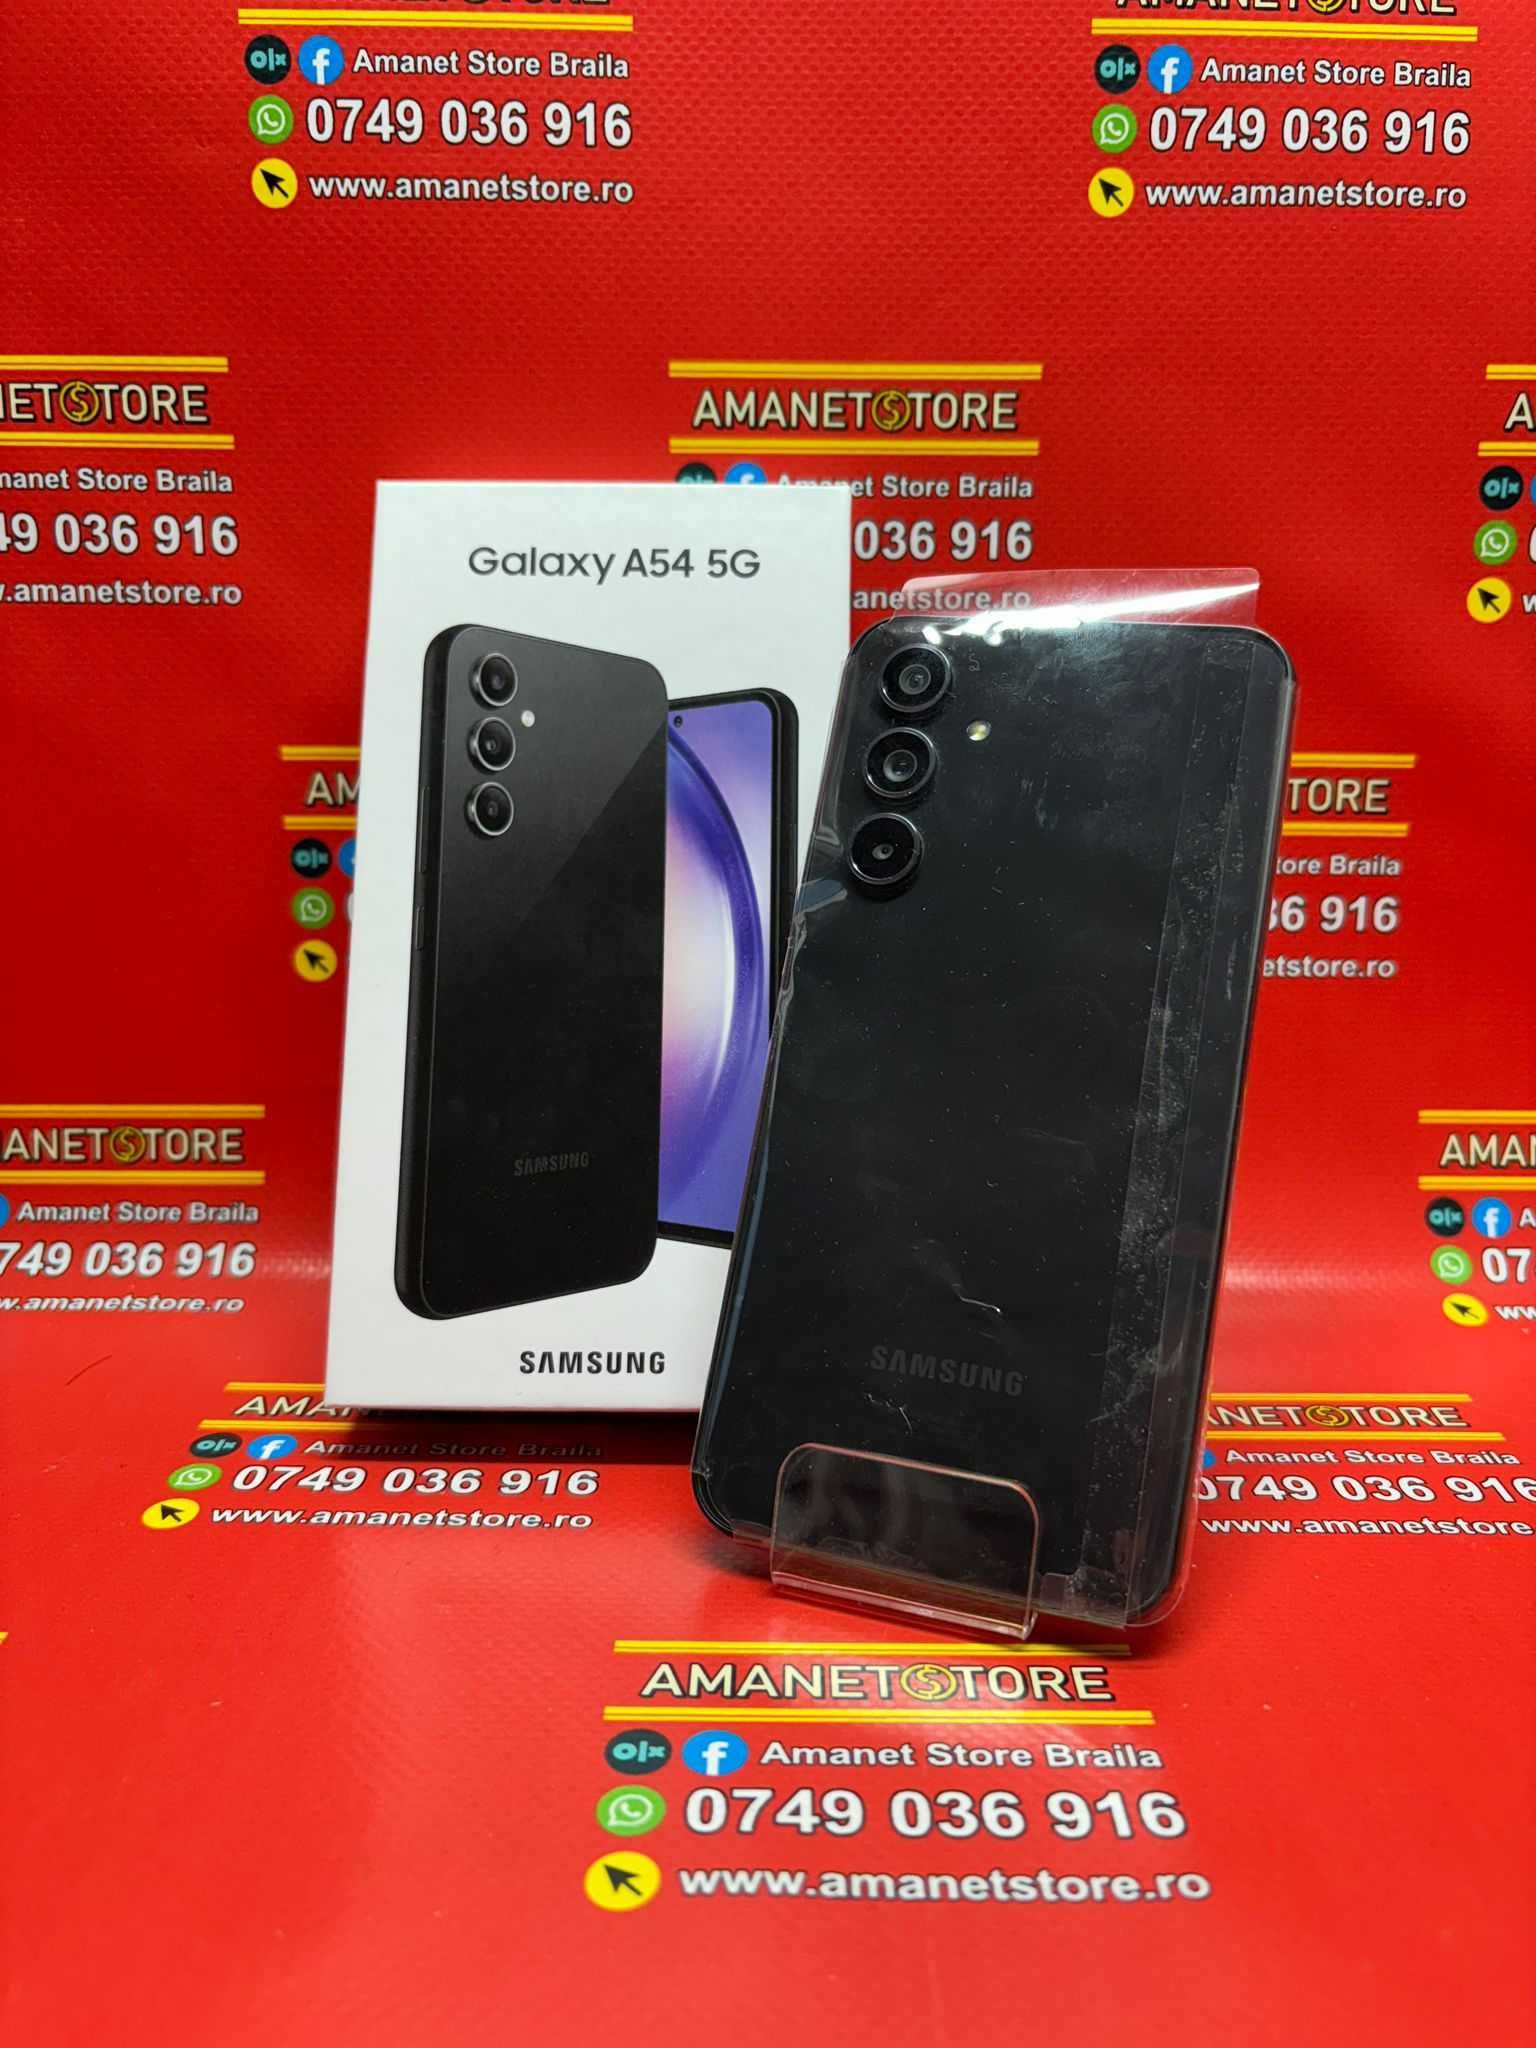 Samsung Galaxy A54 5G Amanet Store Braila [10335]